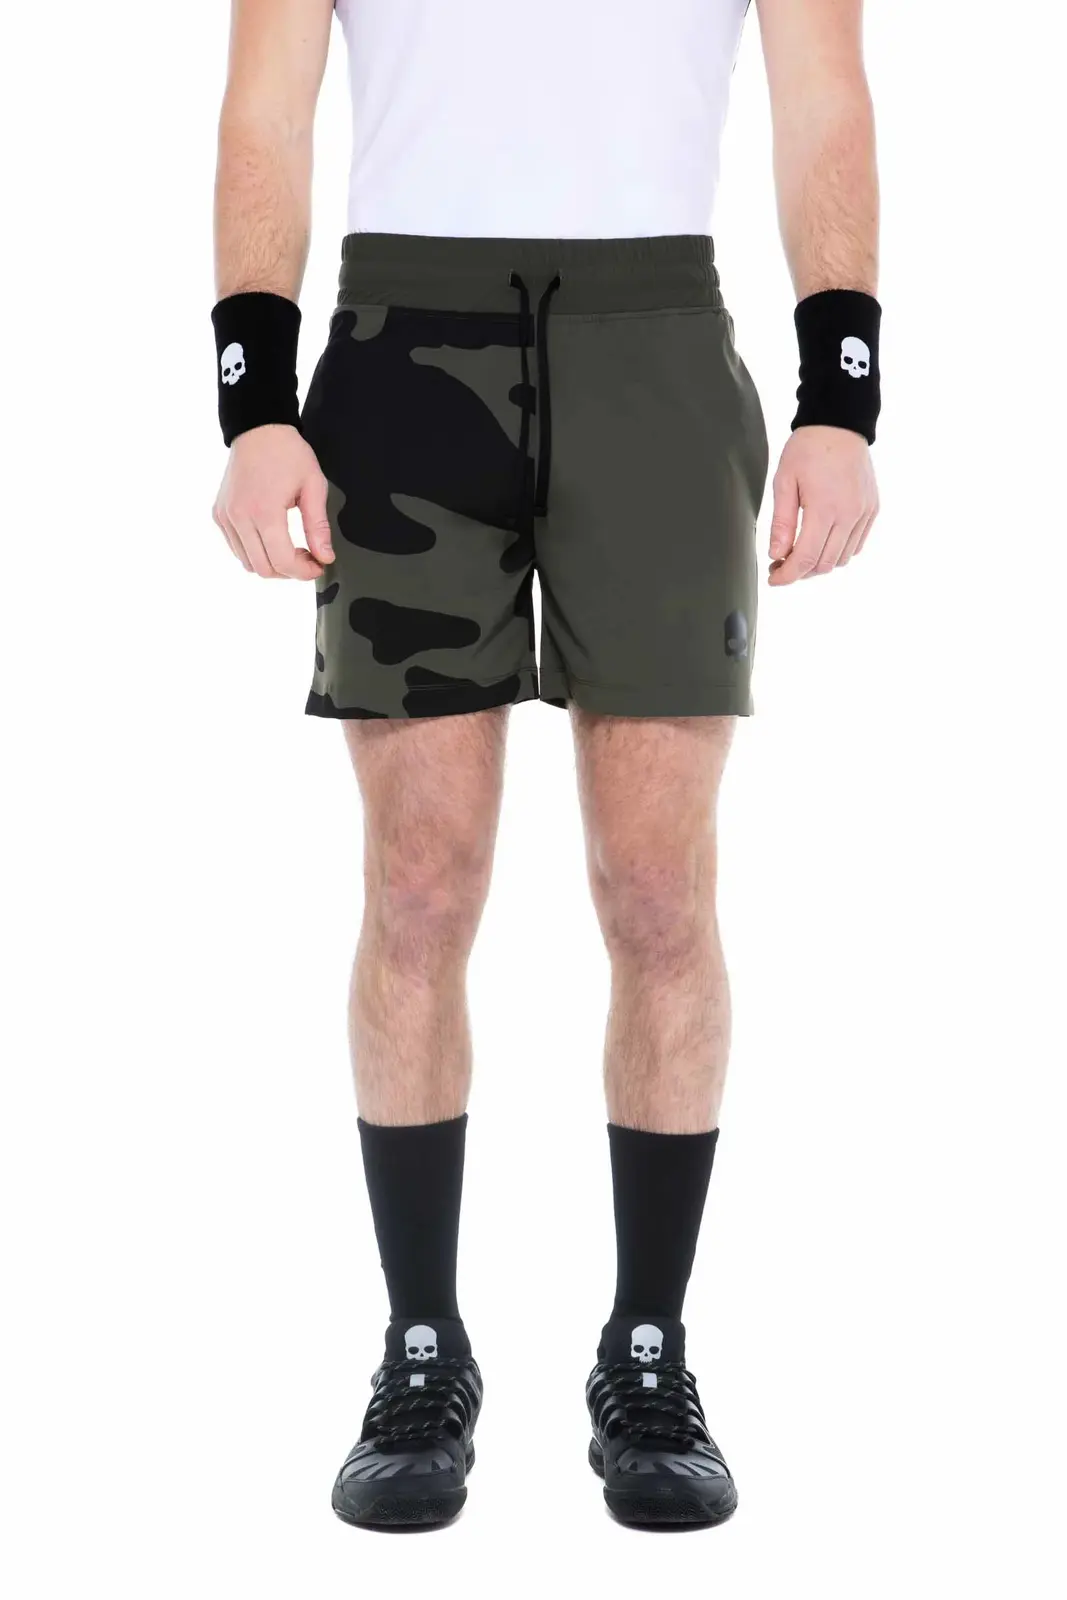 Pánské šortky Hydrogen  Tech Camo Shorts Military Green S